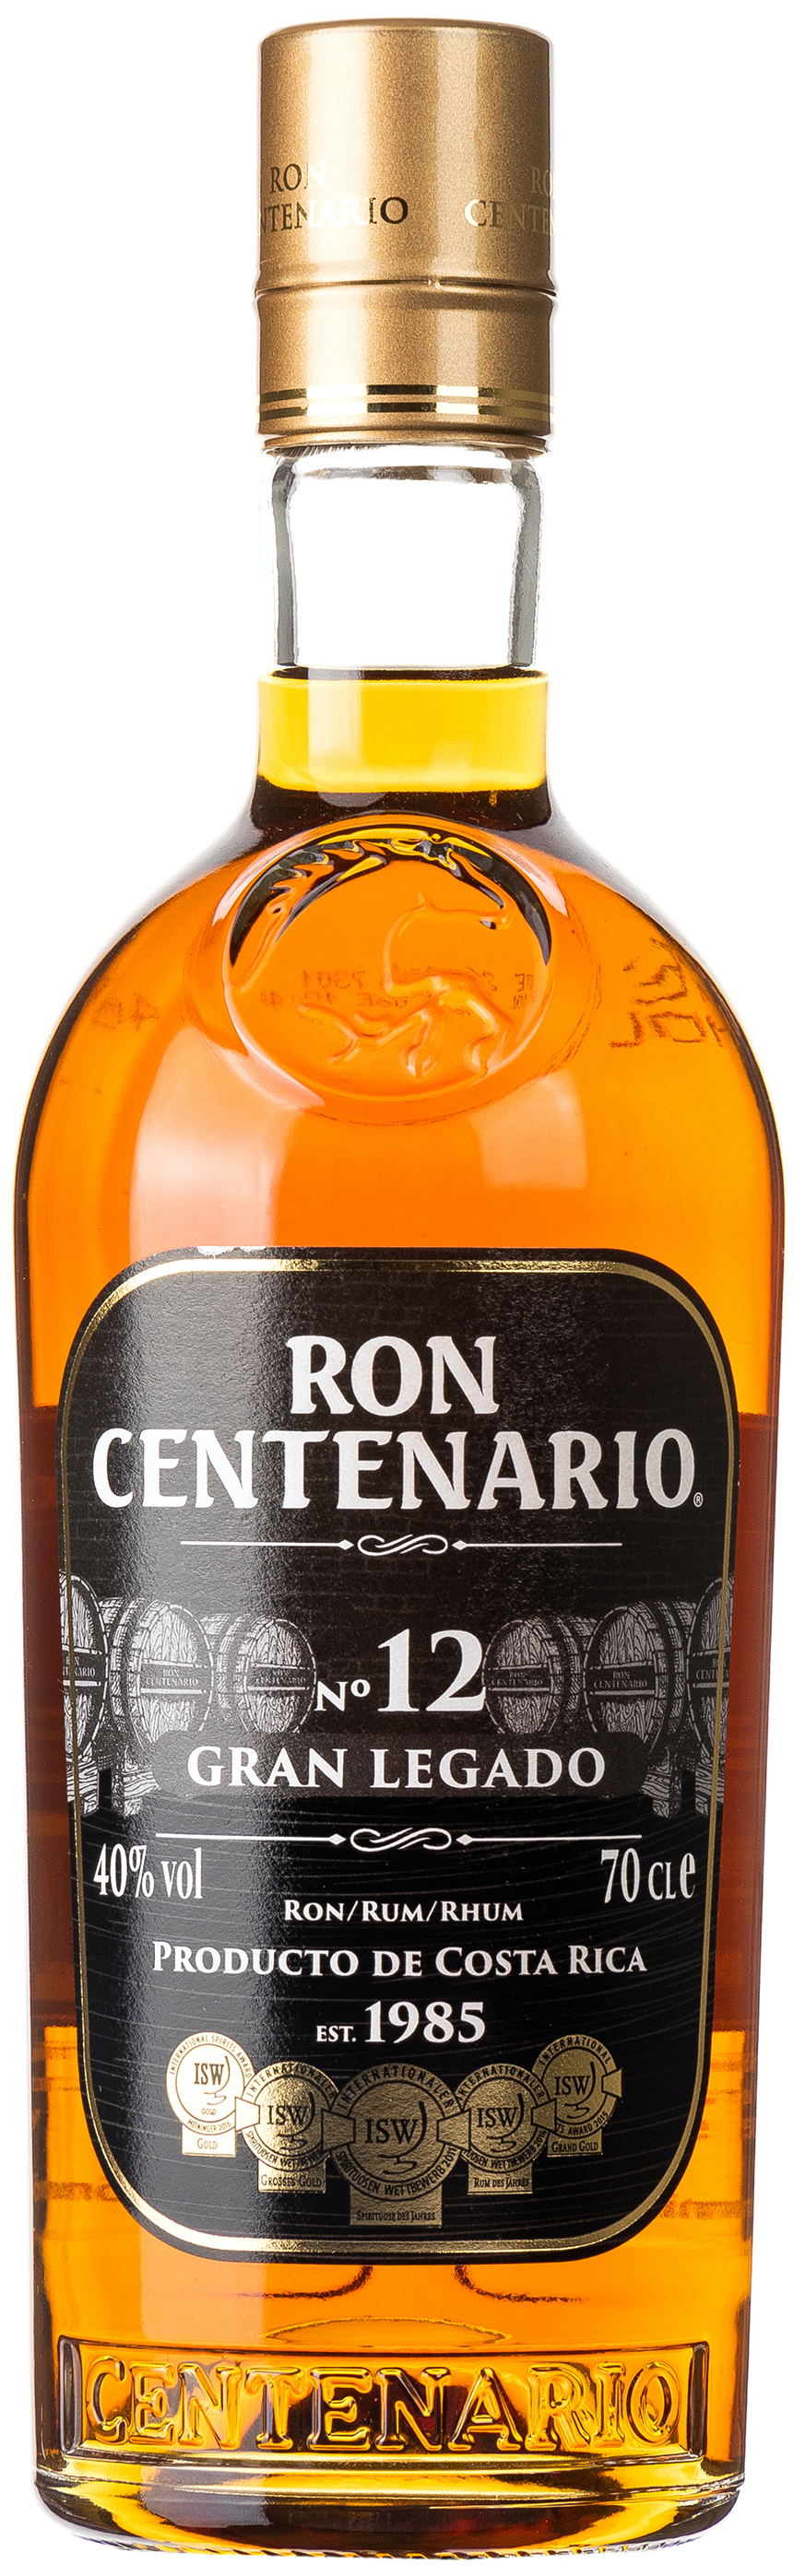 Ron Centenario Rum 12 Jahre Gran Legado 40% vol. 0,7L